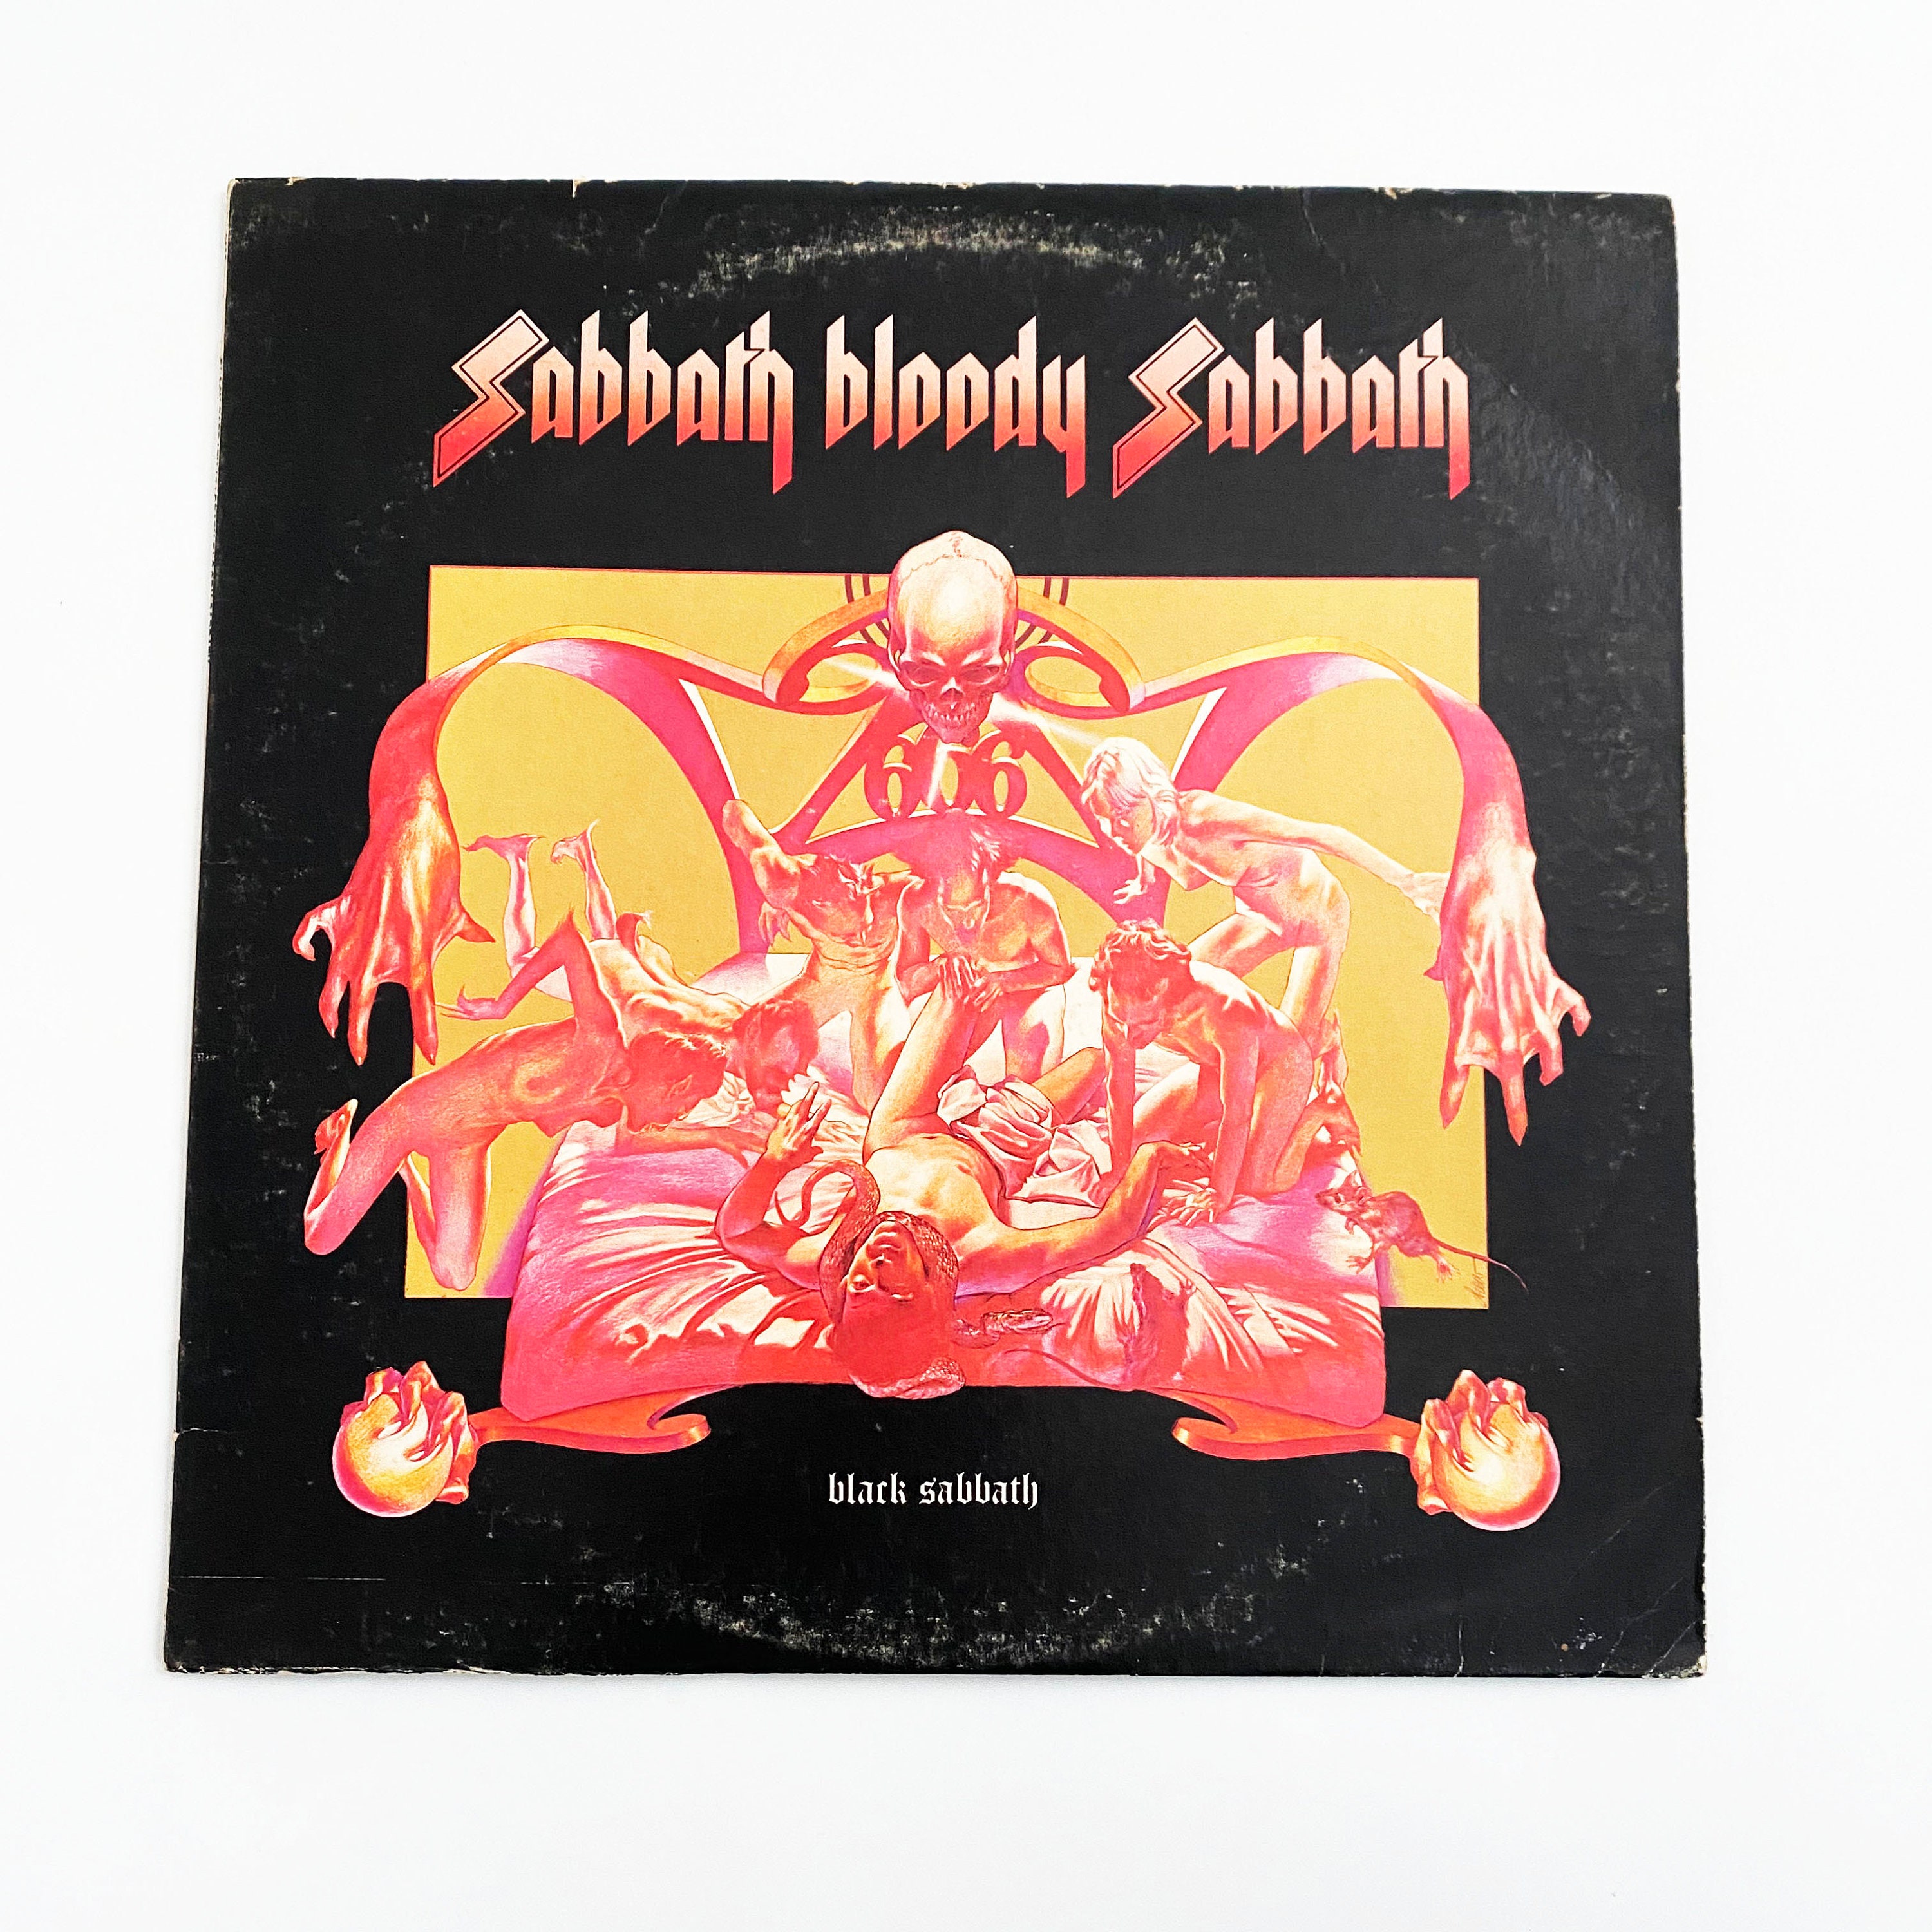 Black Sabbath reeditará en vinilo sus discos con Ozzy 